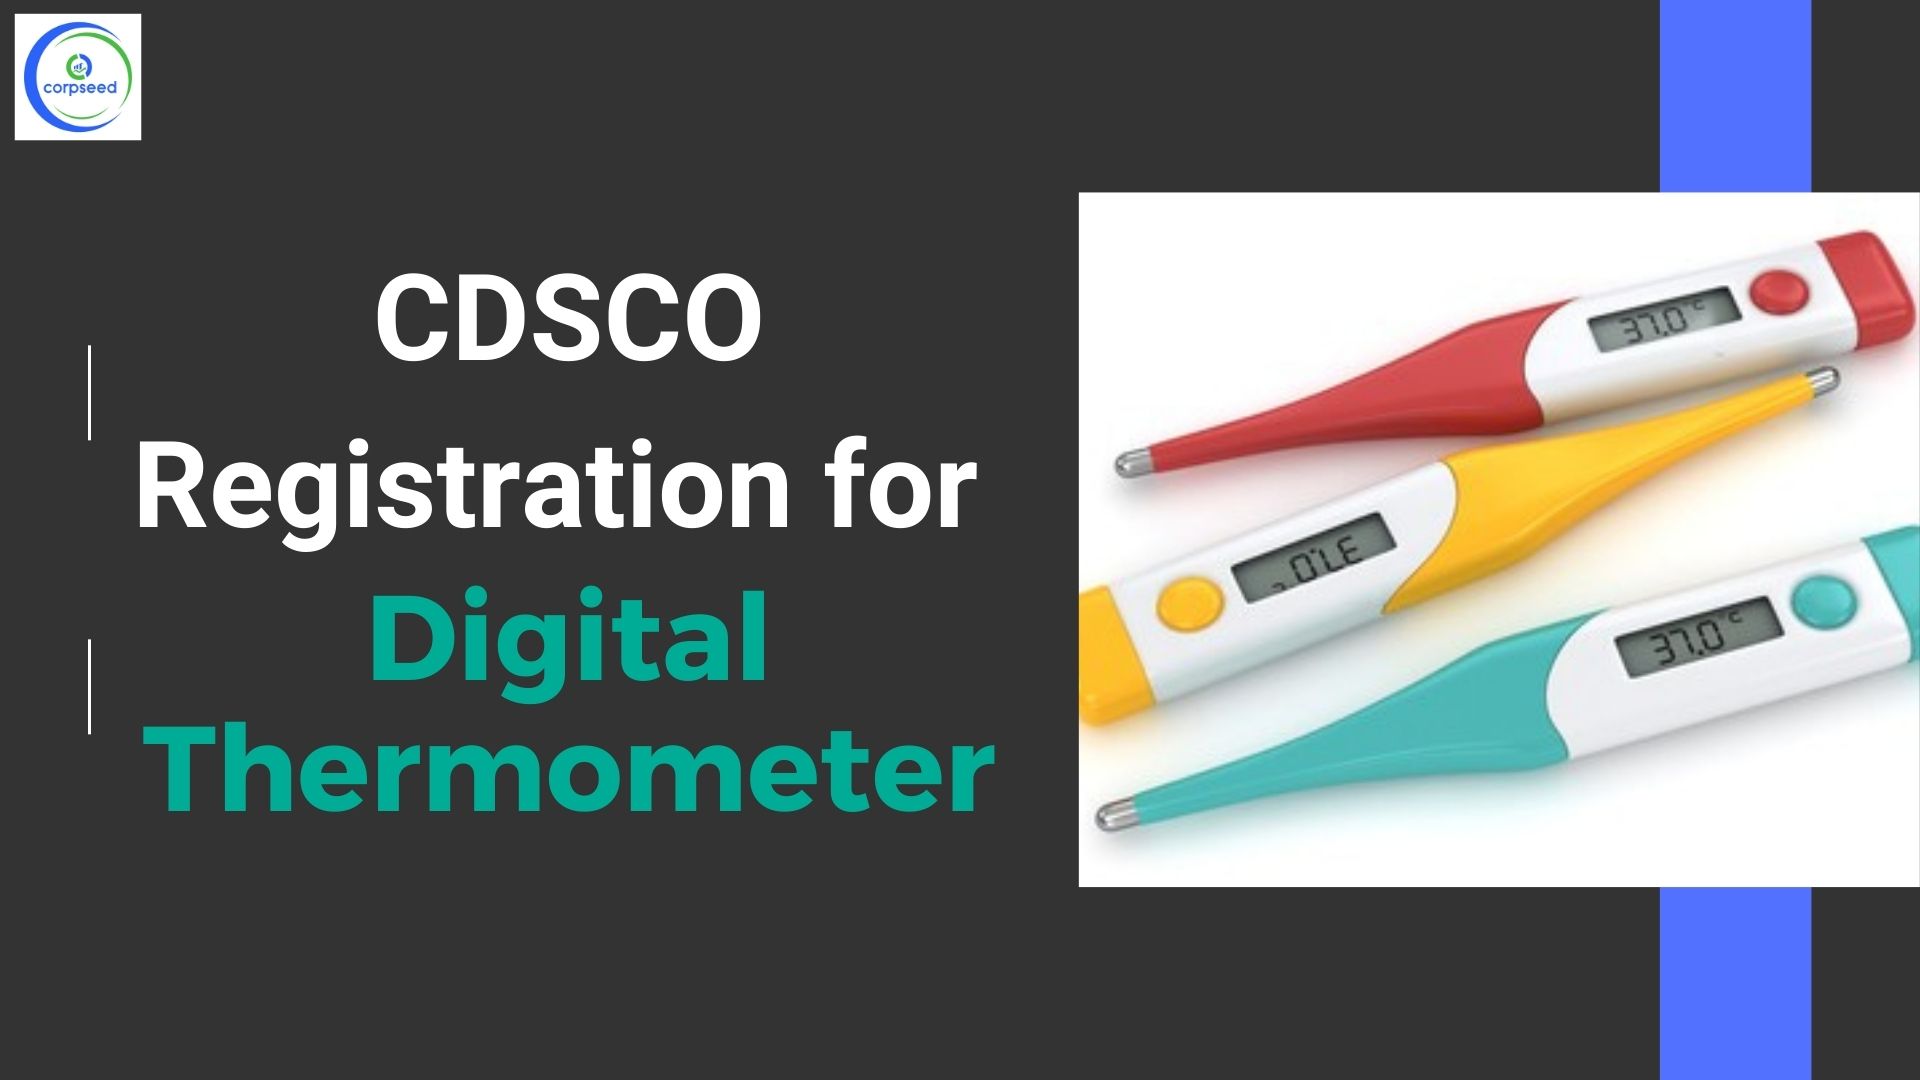 CDSCO_Registration_for_Digital_Thermometer_Corpseed.jpg